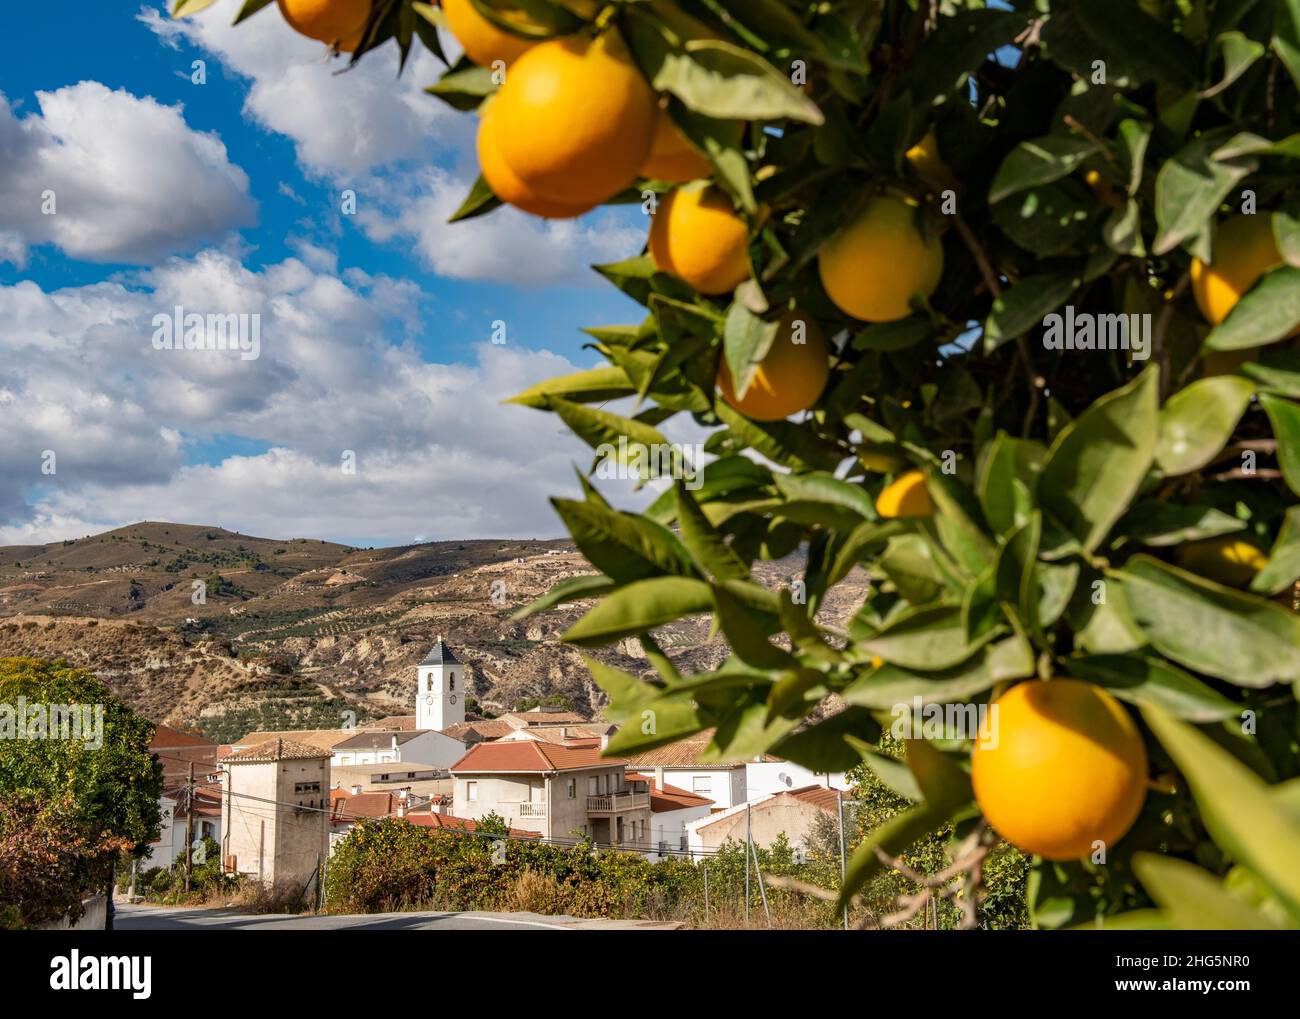 Das Dorf Restabal im Lecrin-Tal, Andalusien, Spanien. Orangen am Straßenrand, die in das Dorf fahren Stockfoto